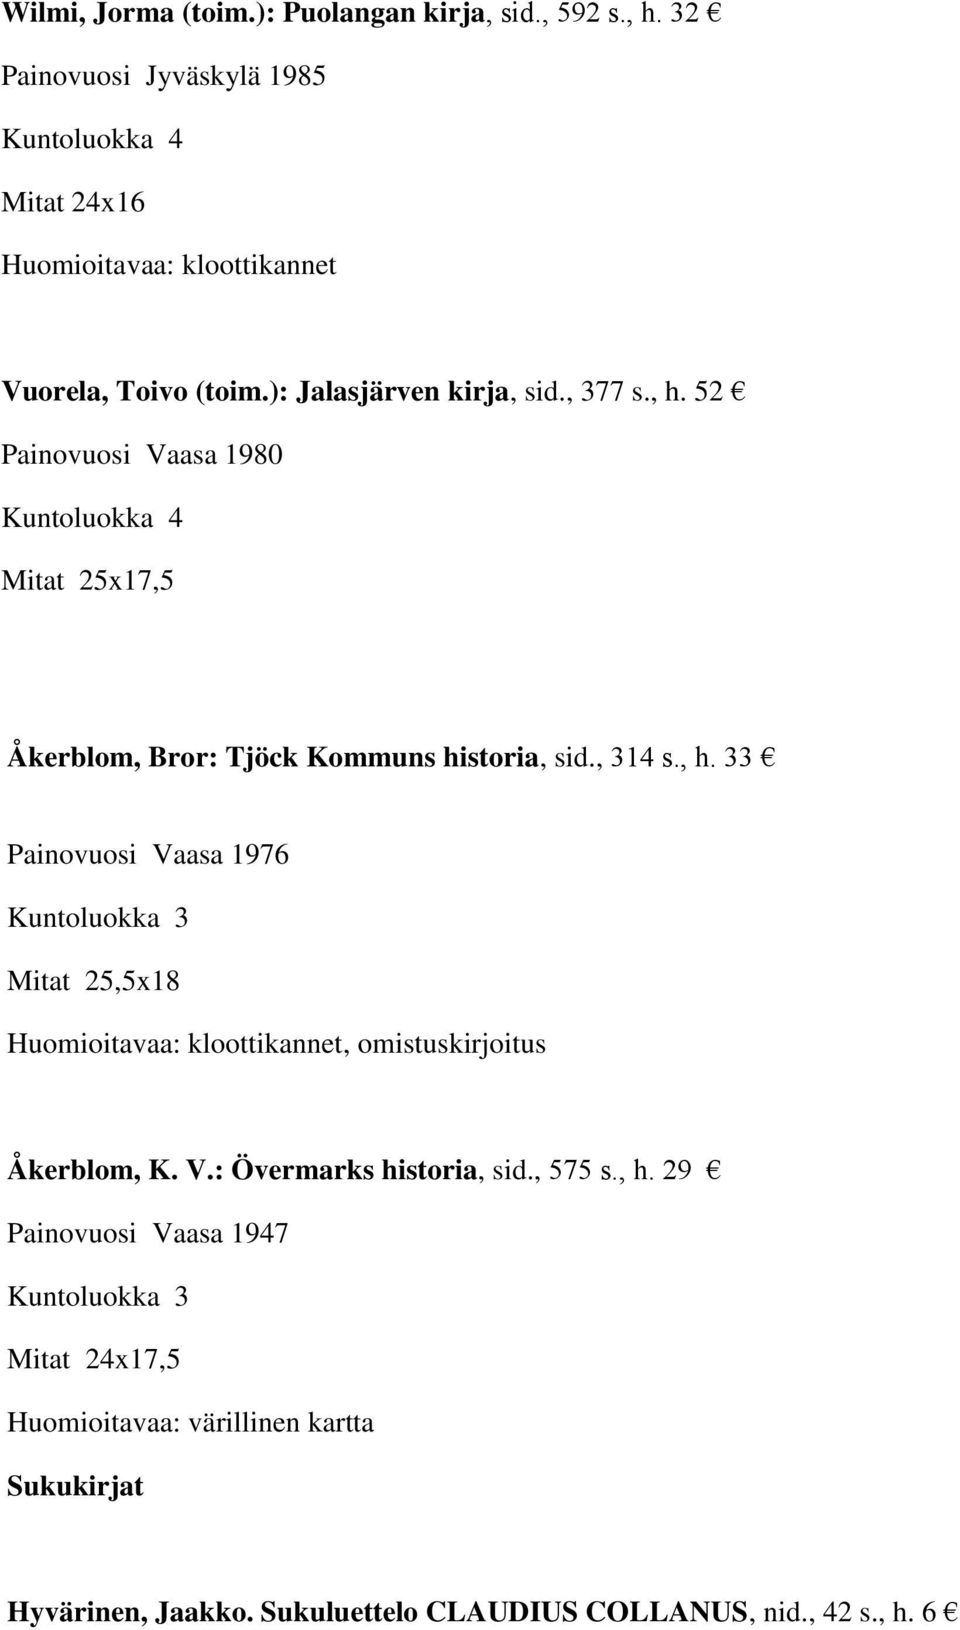 , 314 s., h. 33 Painovuosi Vaasa 1976 Mitat 25,5x18, omistuskirjoitus Åkerblom, K. V.: Övermarks historia, sid., 575 s., h. 29 Painovuosi Vaasa 1947 Mitat 24x17,5 Huomioitavaa: värillinen kartta Sukukirjat Hyvärinen, Jaakko.